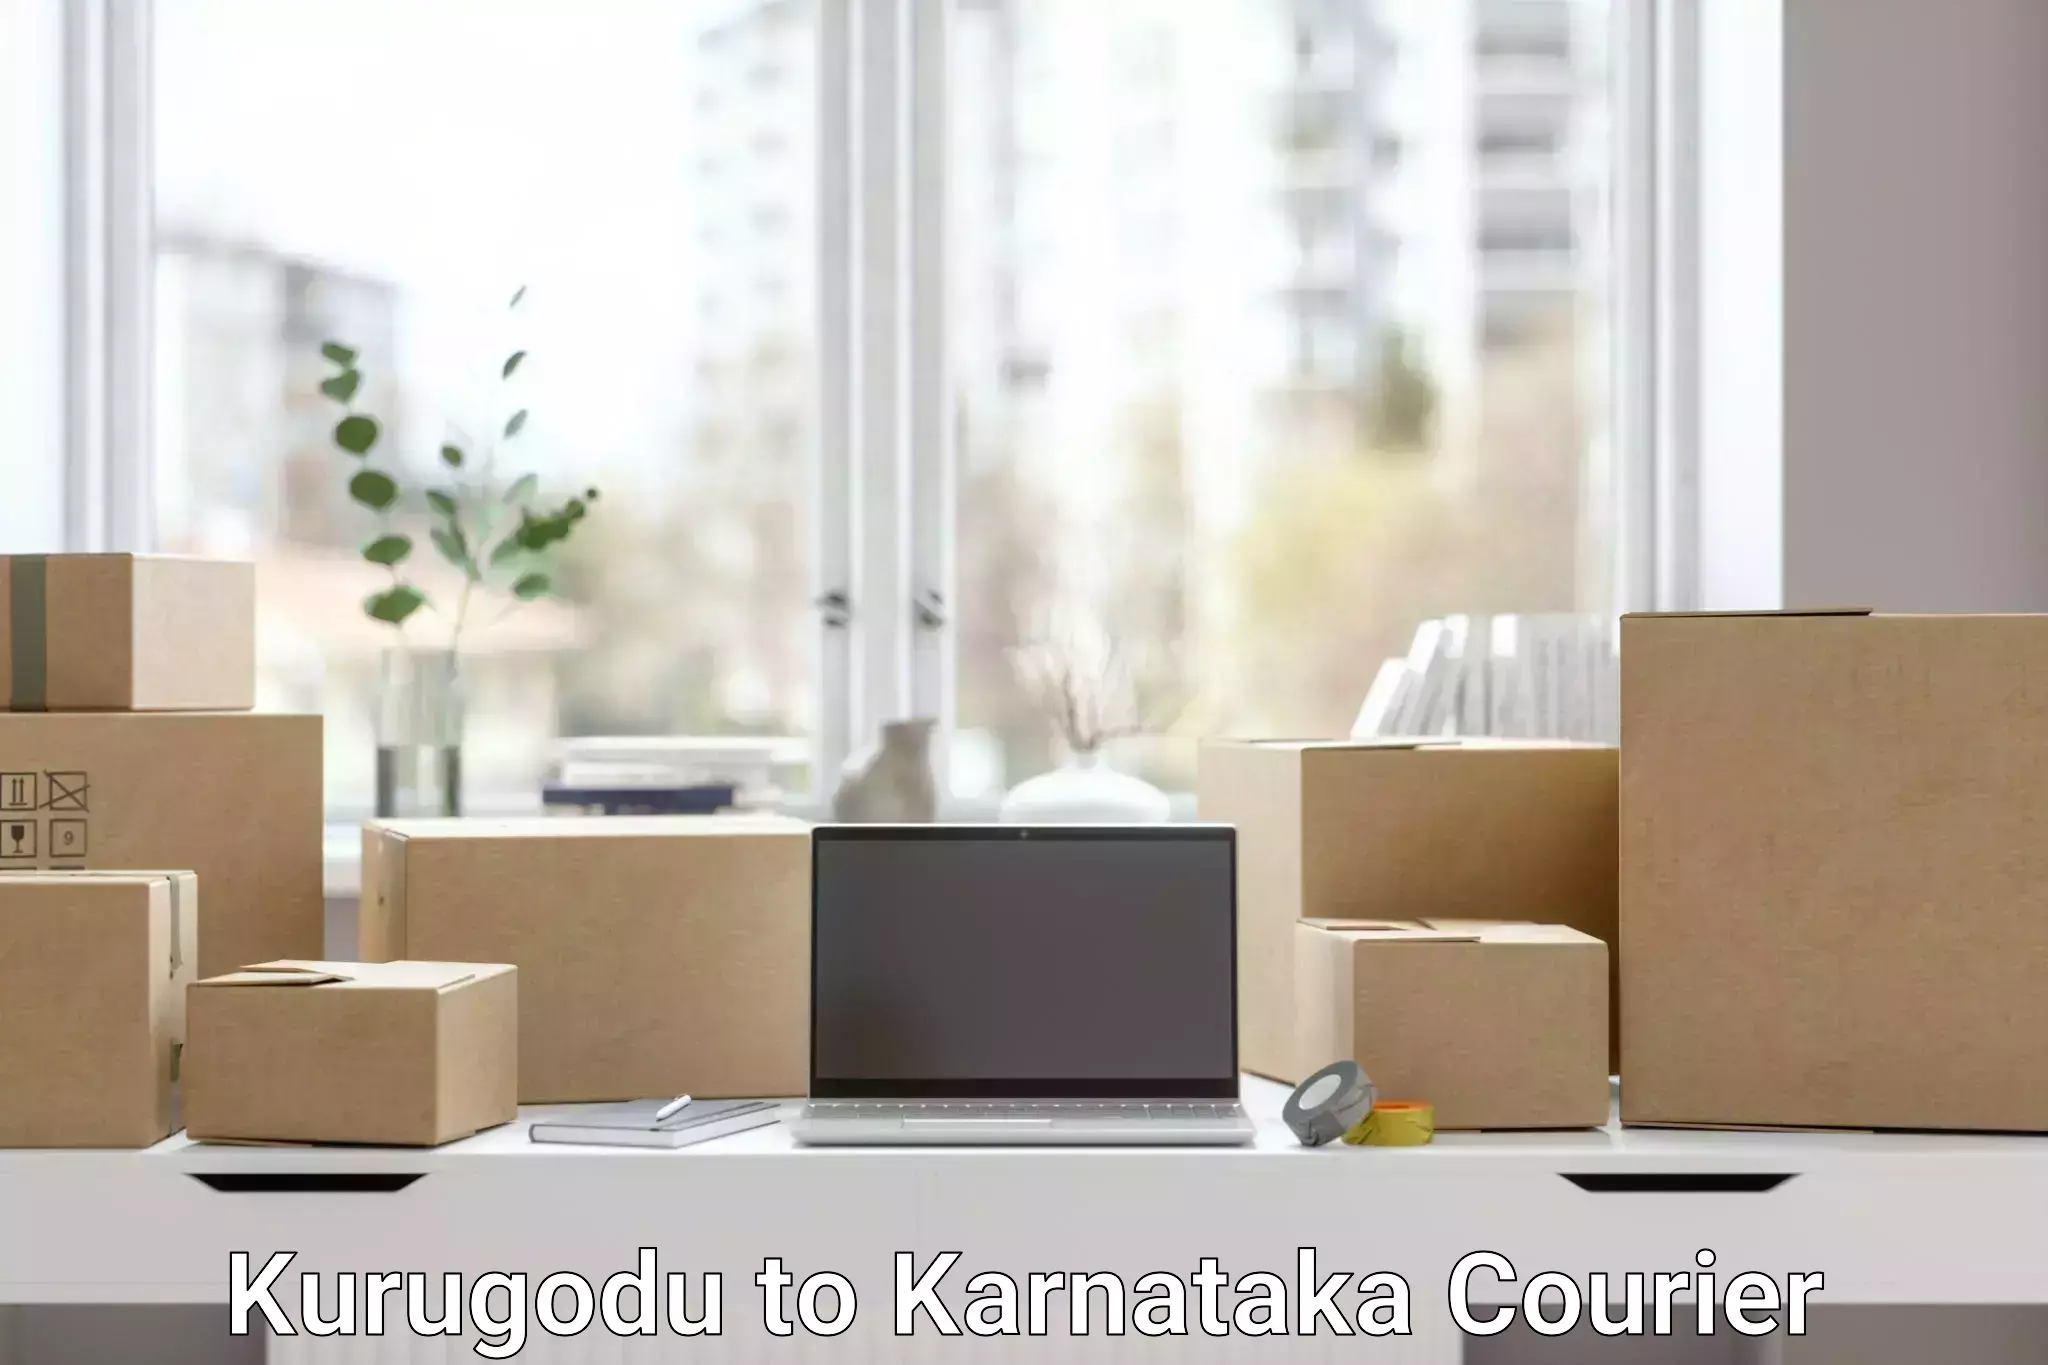 Courier service comparison Kurugodu to Chikmagalur